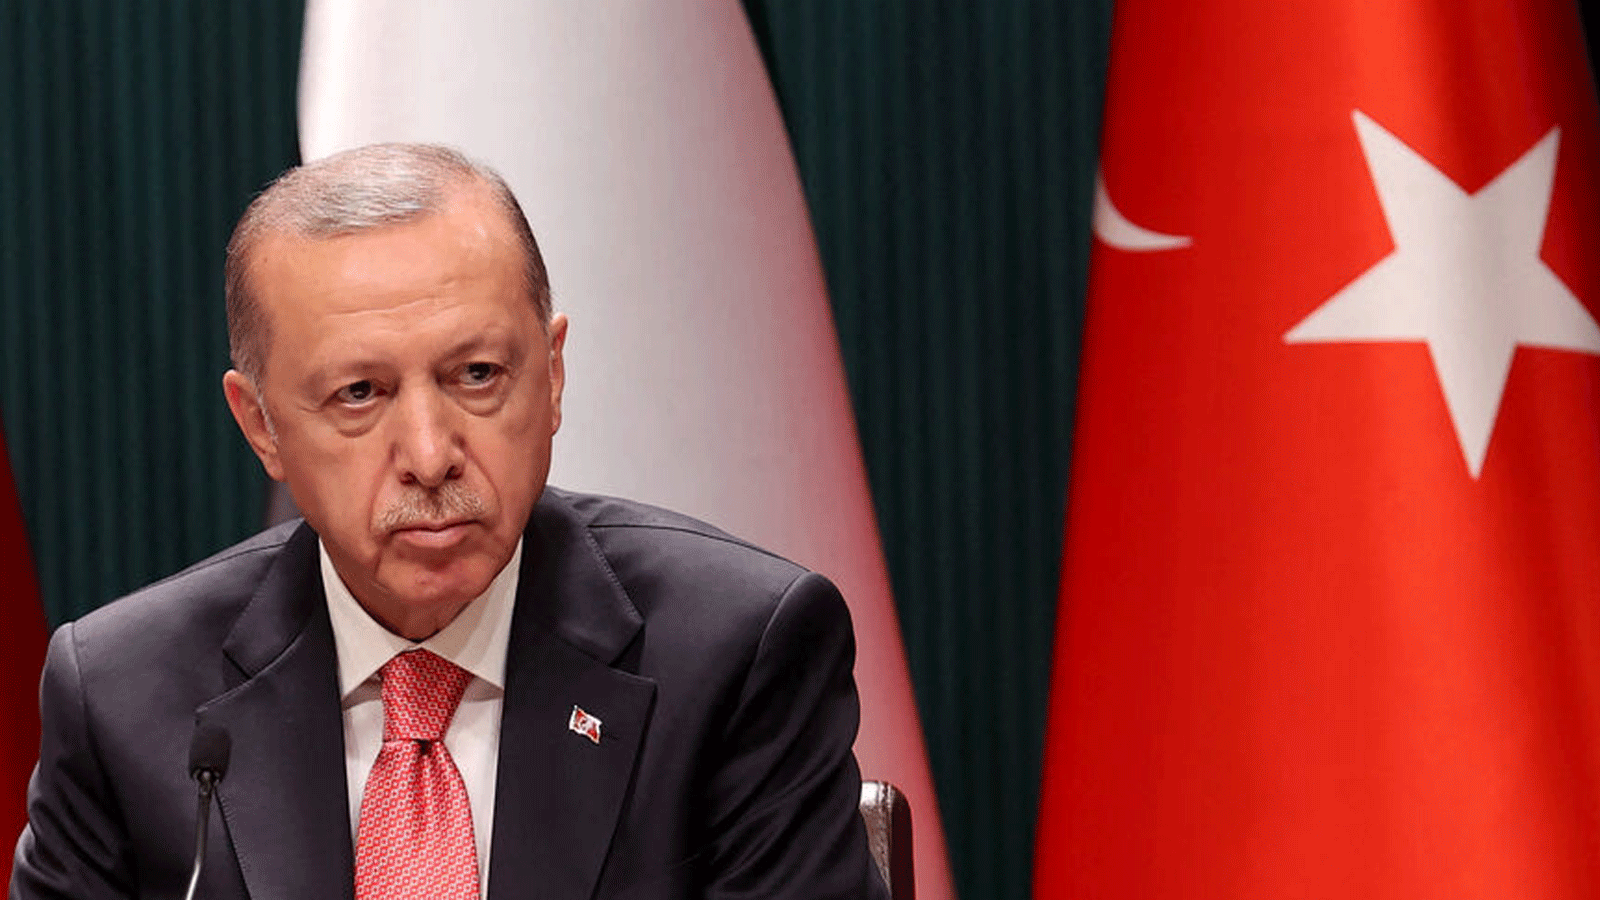 الرئيس التركي رجب طيب أردوغان(أرشيفية)